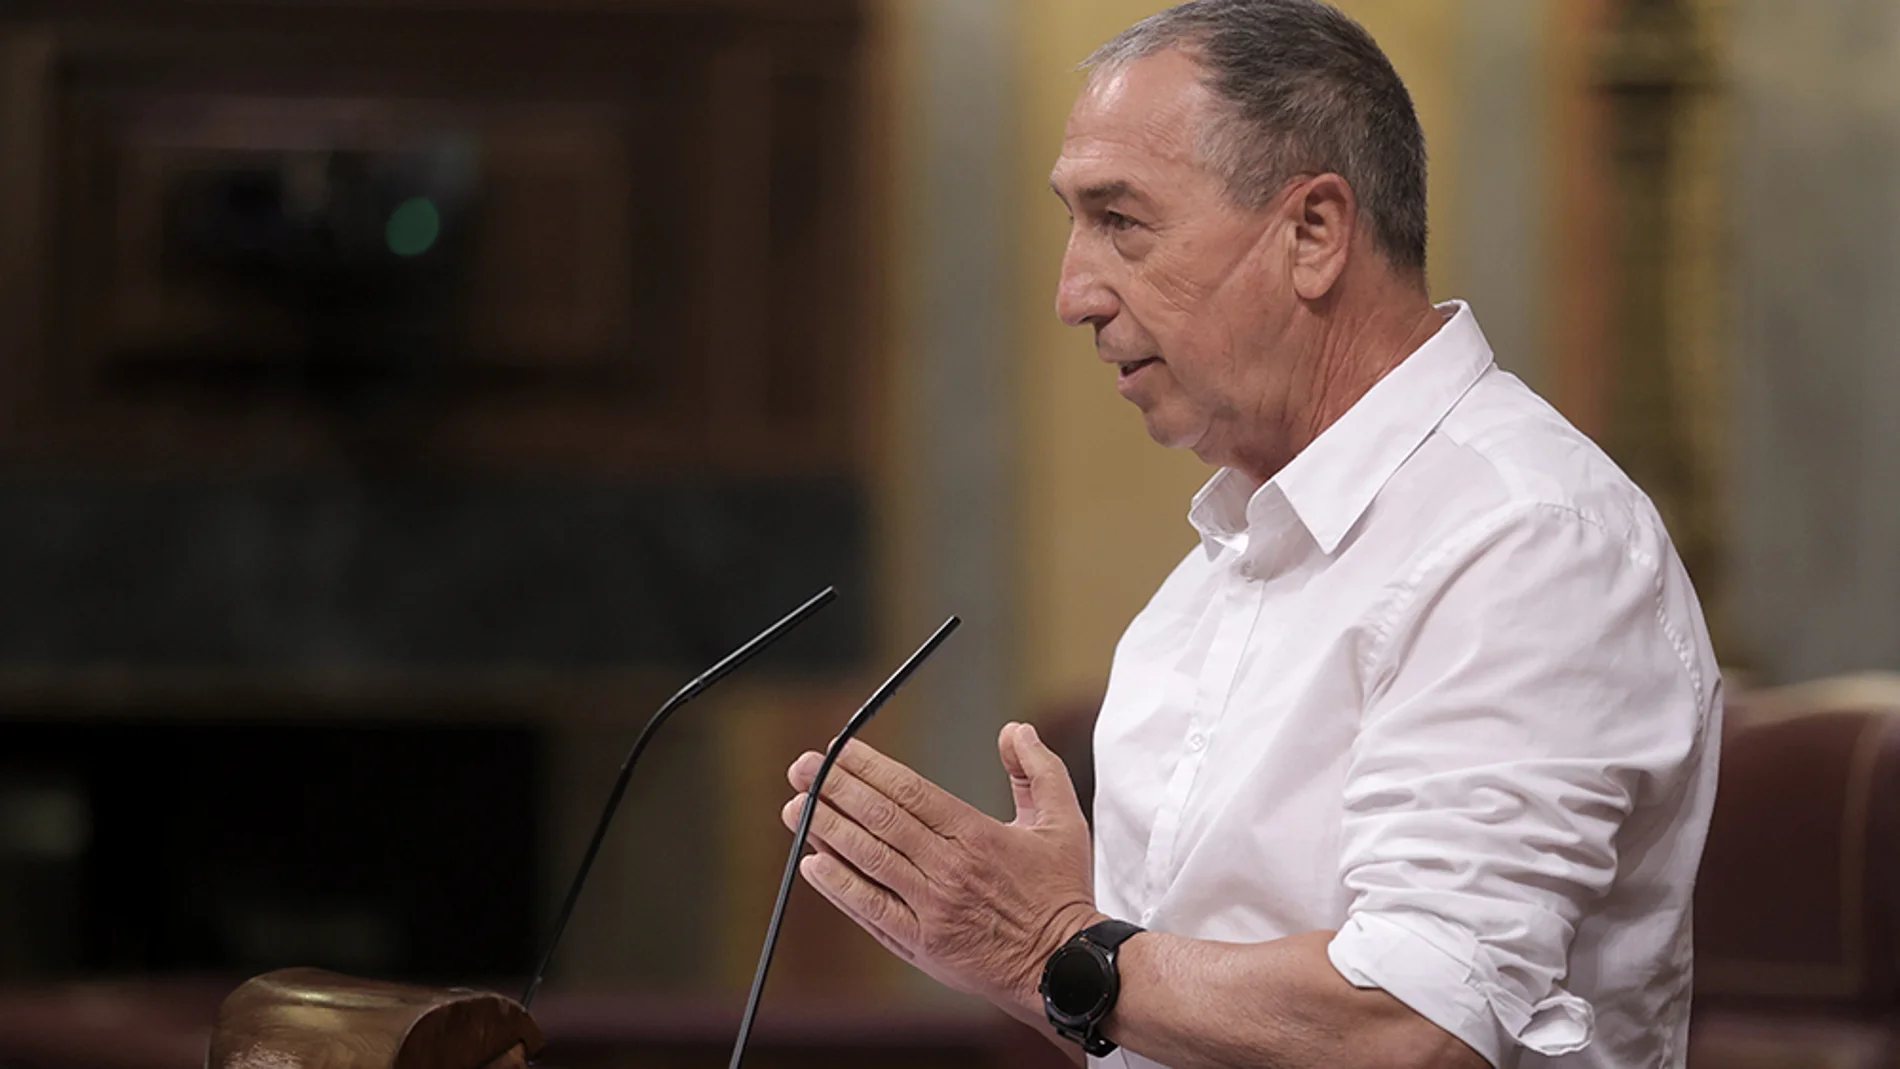 El diputado de Compromís, Joan Baldoví, interviene en una sesión plenaria en el Congreso de los Diputados, a 21 de julio de 2021, en Madrid